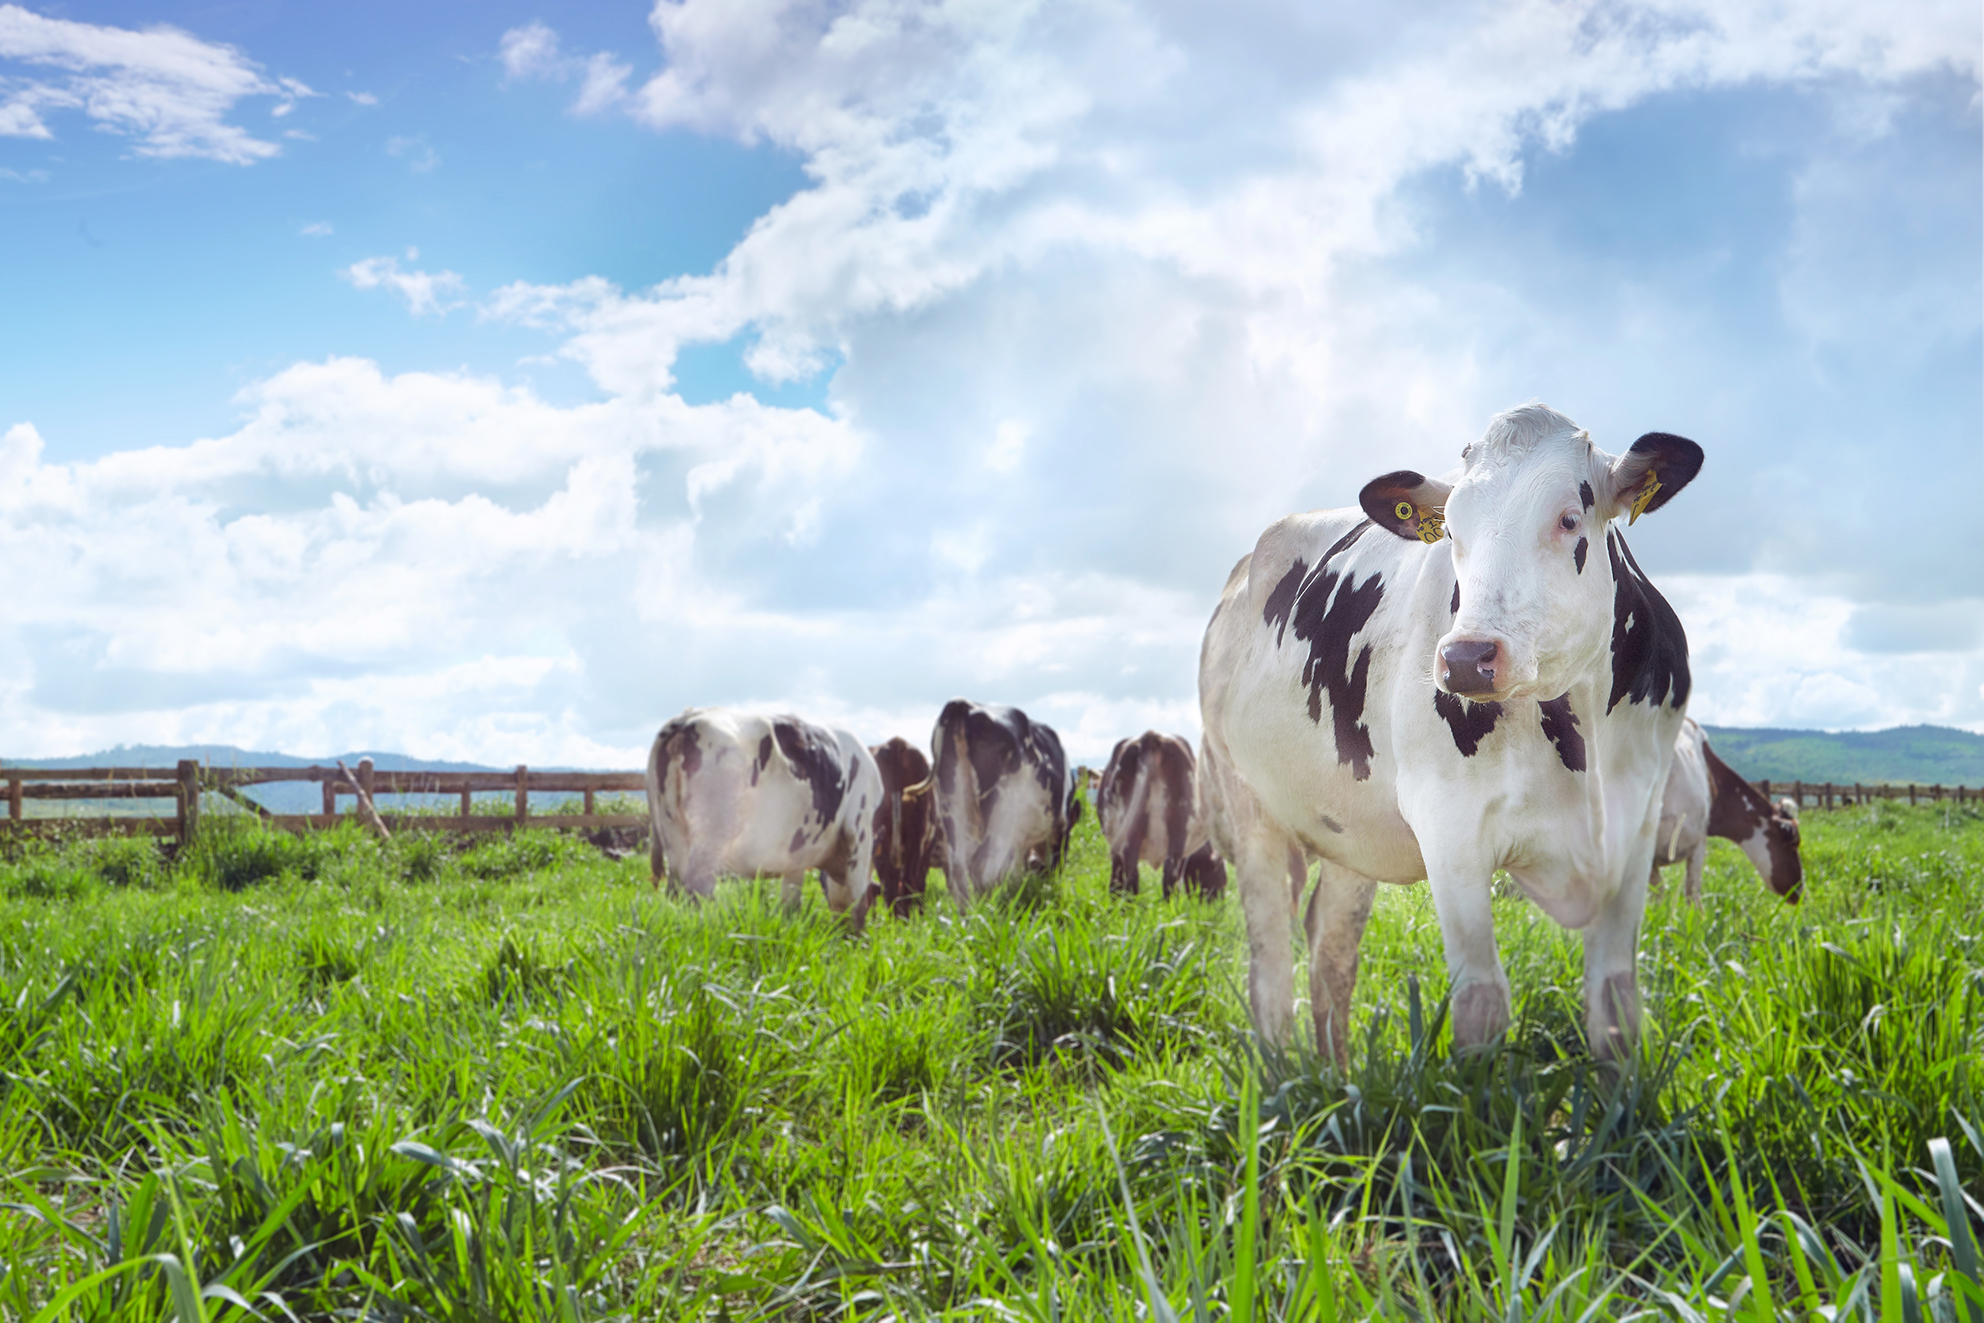 Chăn nuôi bò sữa hiện nay là một nghề được nhiều người quan tâm đến. Chăn nuôi bò sữa có thể tạo ra thu nhập ổn định và mang lại nhiều lợi ích cho môi trường. Chăn nuôi bò sữa cần đảm bảo sức khỏe cho bò sữa và đưa ra những sản phẩm có chất lượng cao. Xem hình ảnh về chăn nuôi bò sữa để hiểu rõ hơn về nghề này.